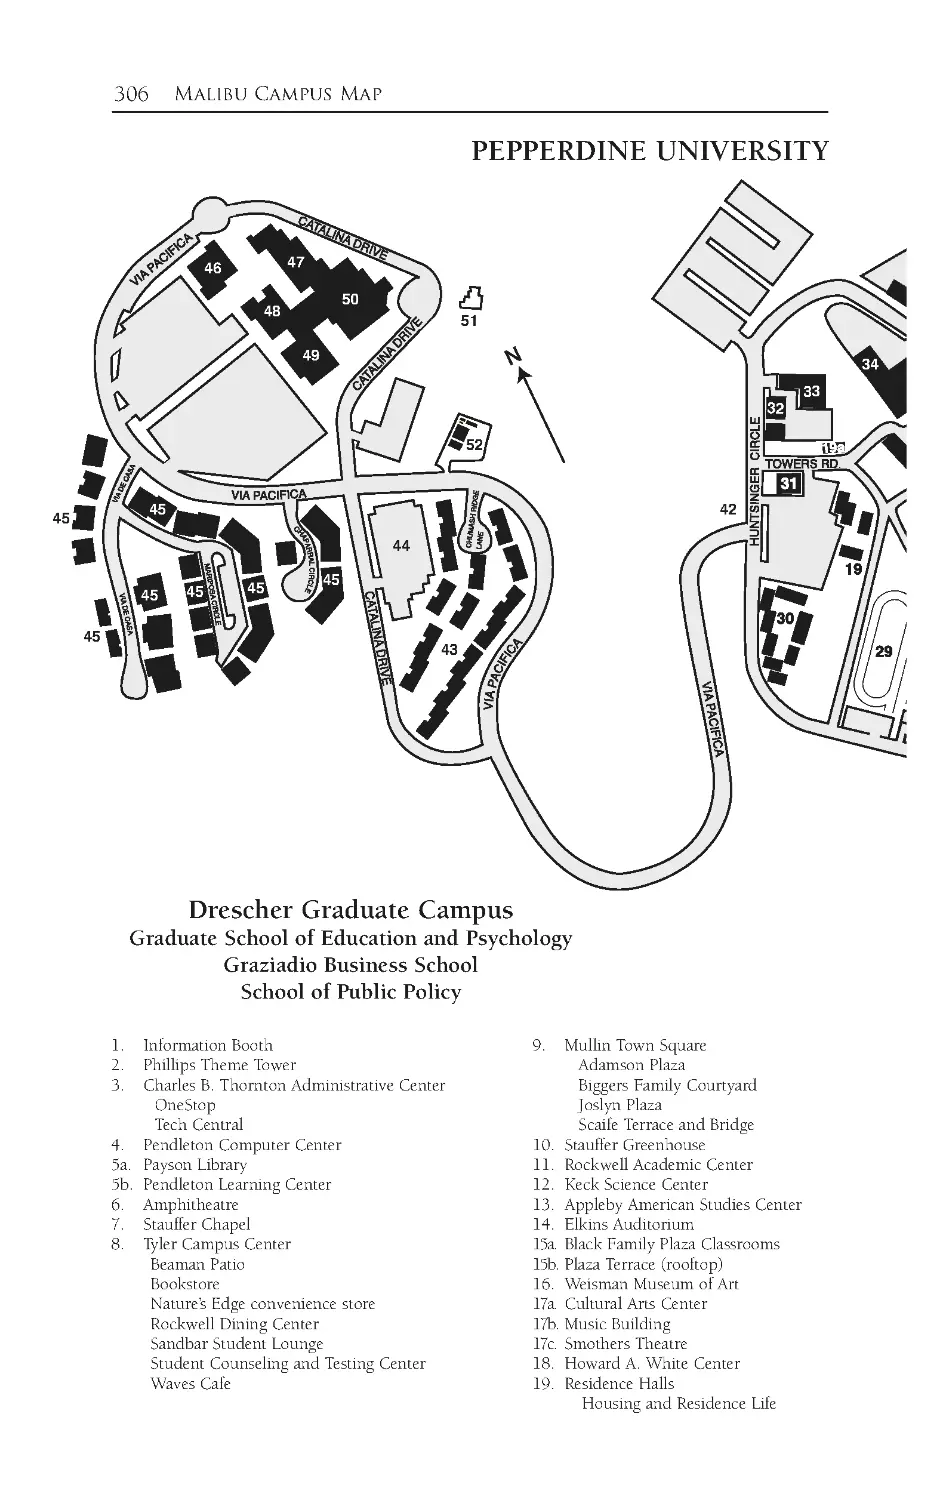 Malibu Campus Map